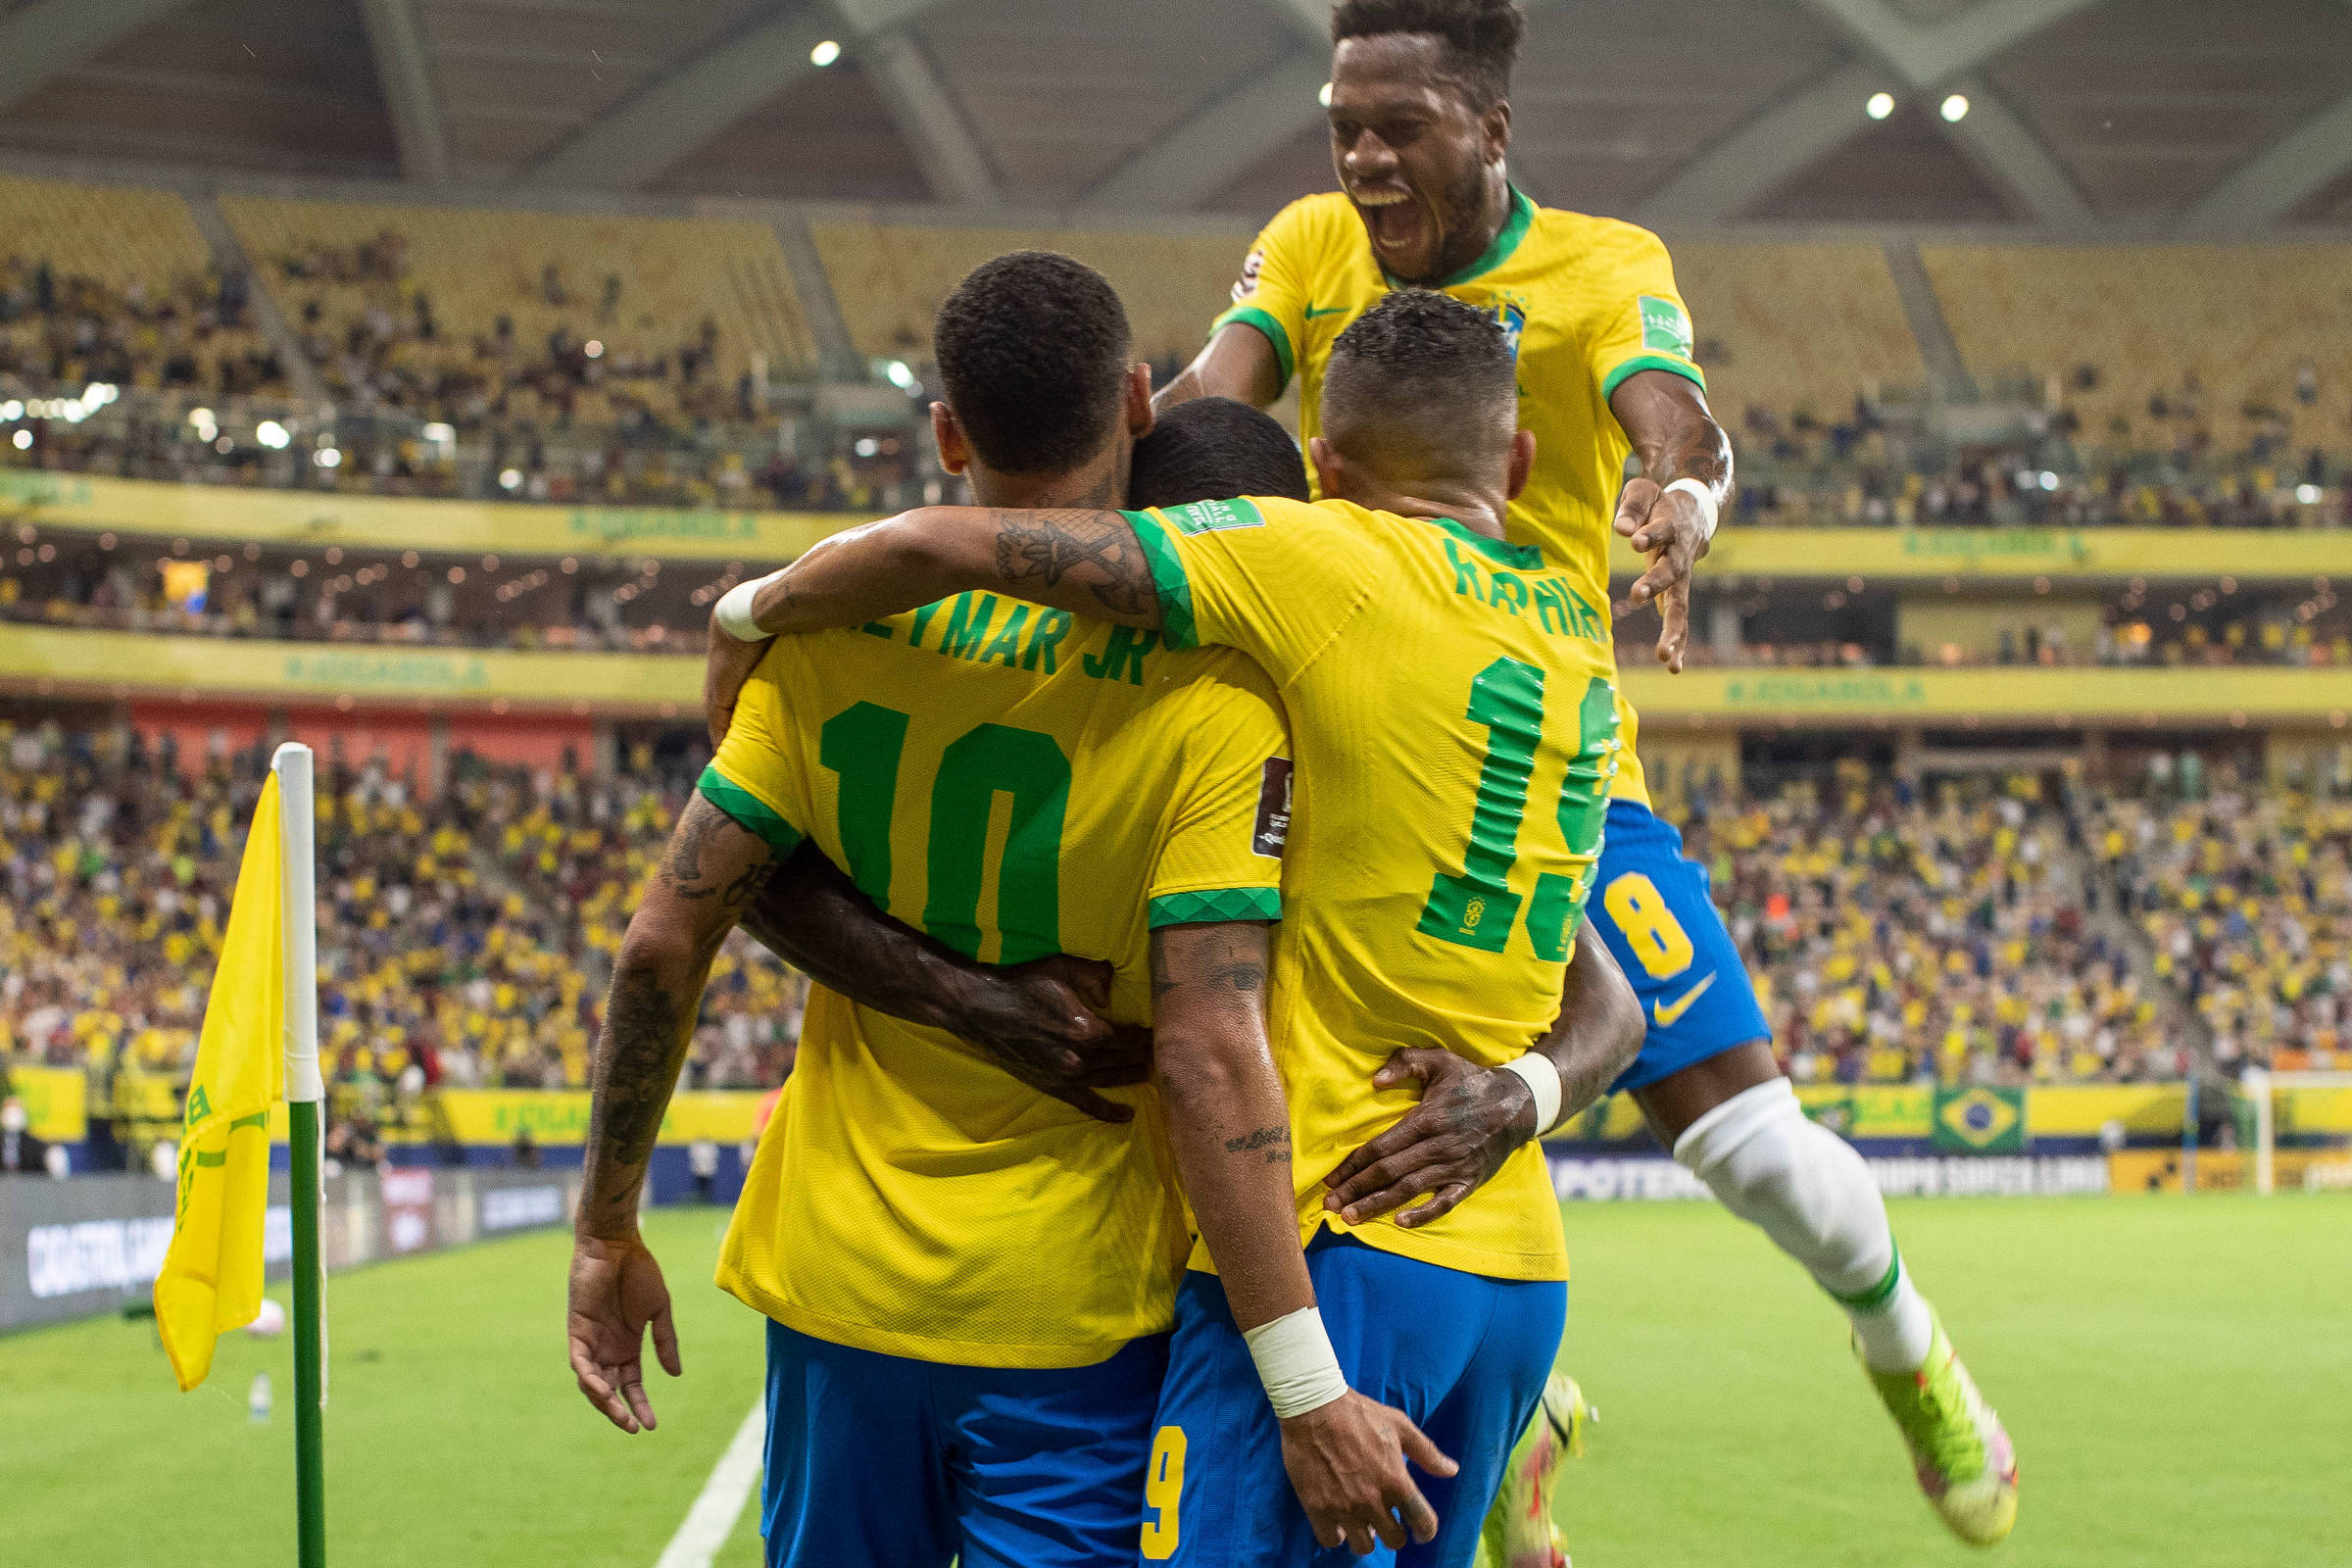 Futebol Alegria do Brasil - Fim de jogo: Brasil 4-1 Uruguai. Um show do  Brasil. SHOW!